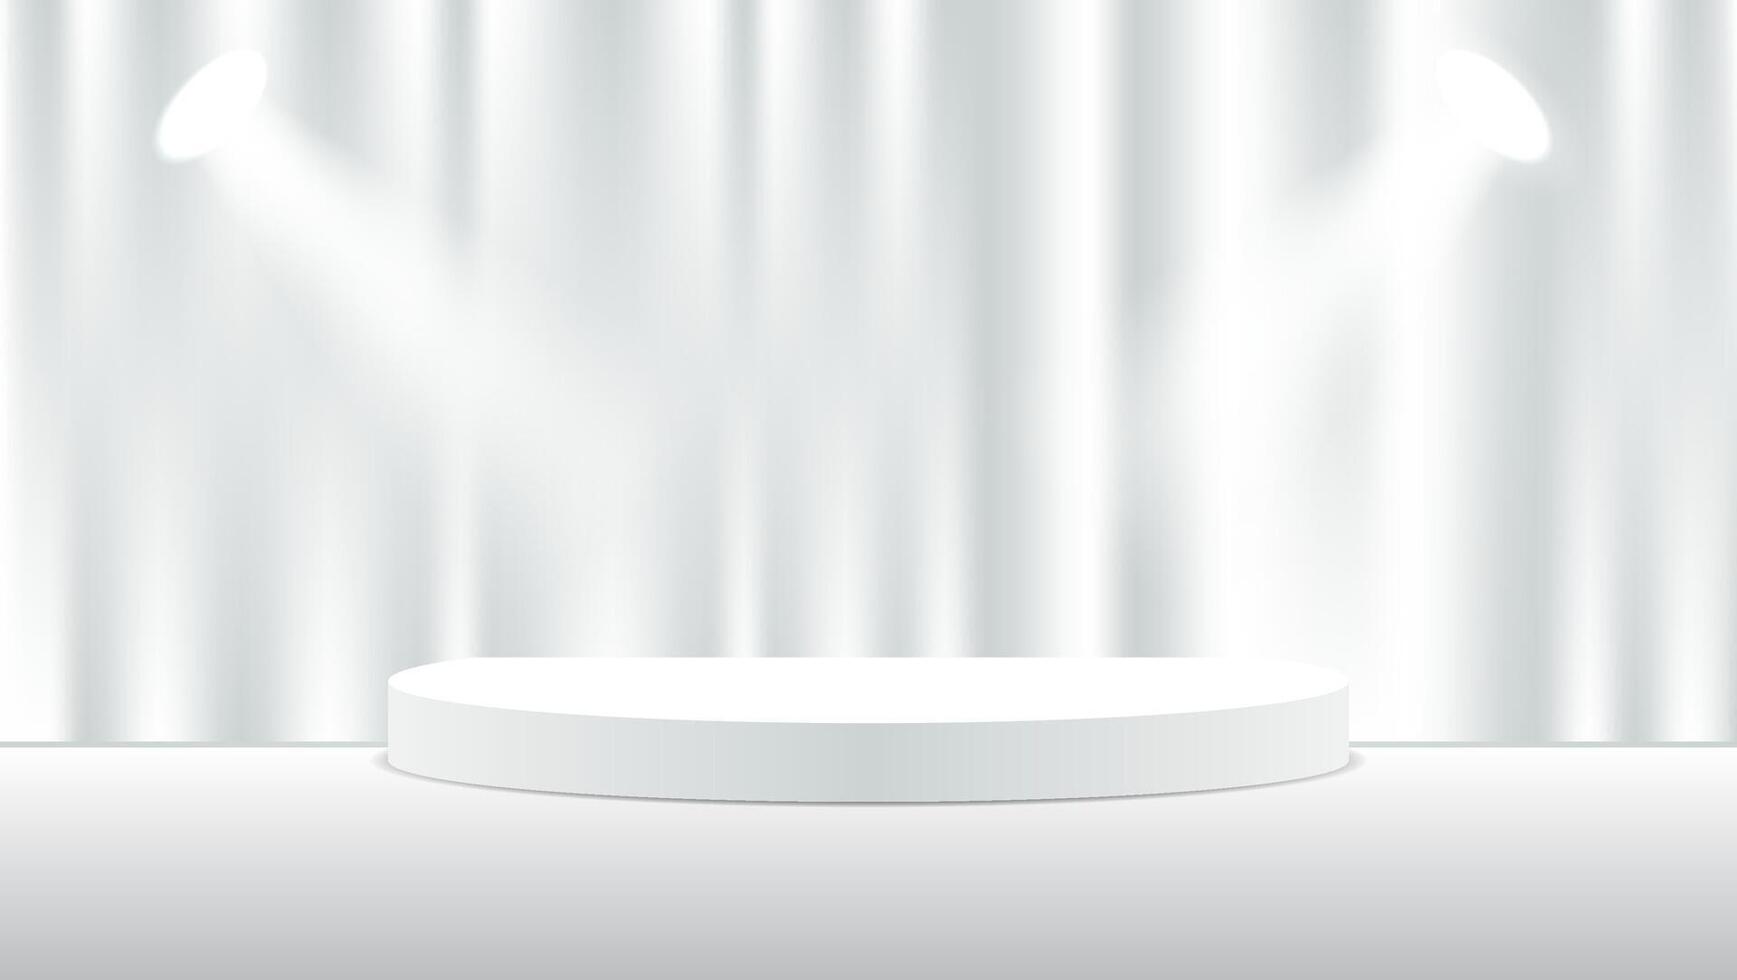 3d wit podium achtergrond met gordijnen en lichten voor Scherm Product presentatie. vector illustratie